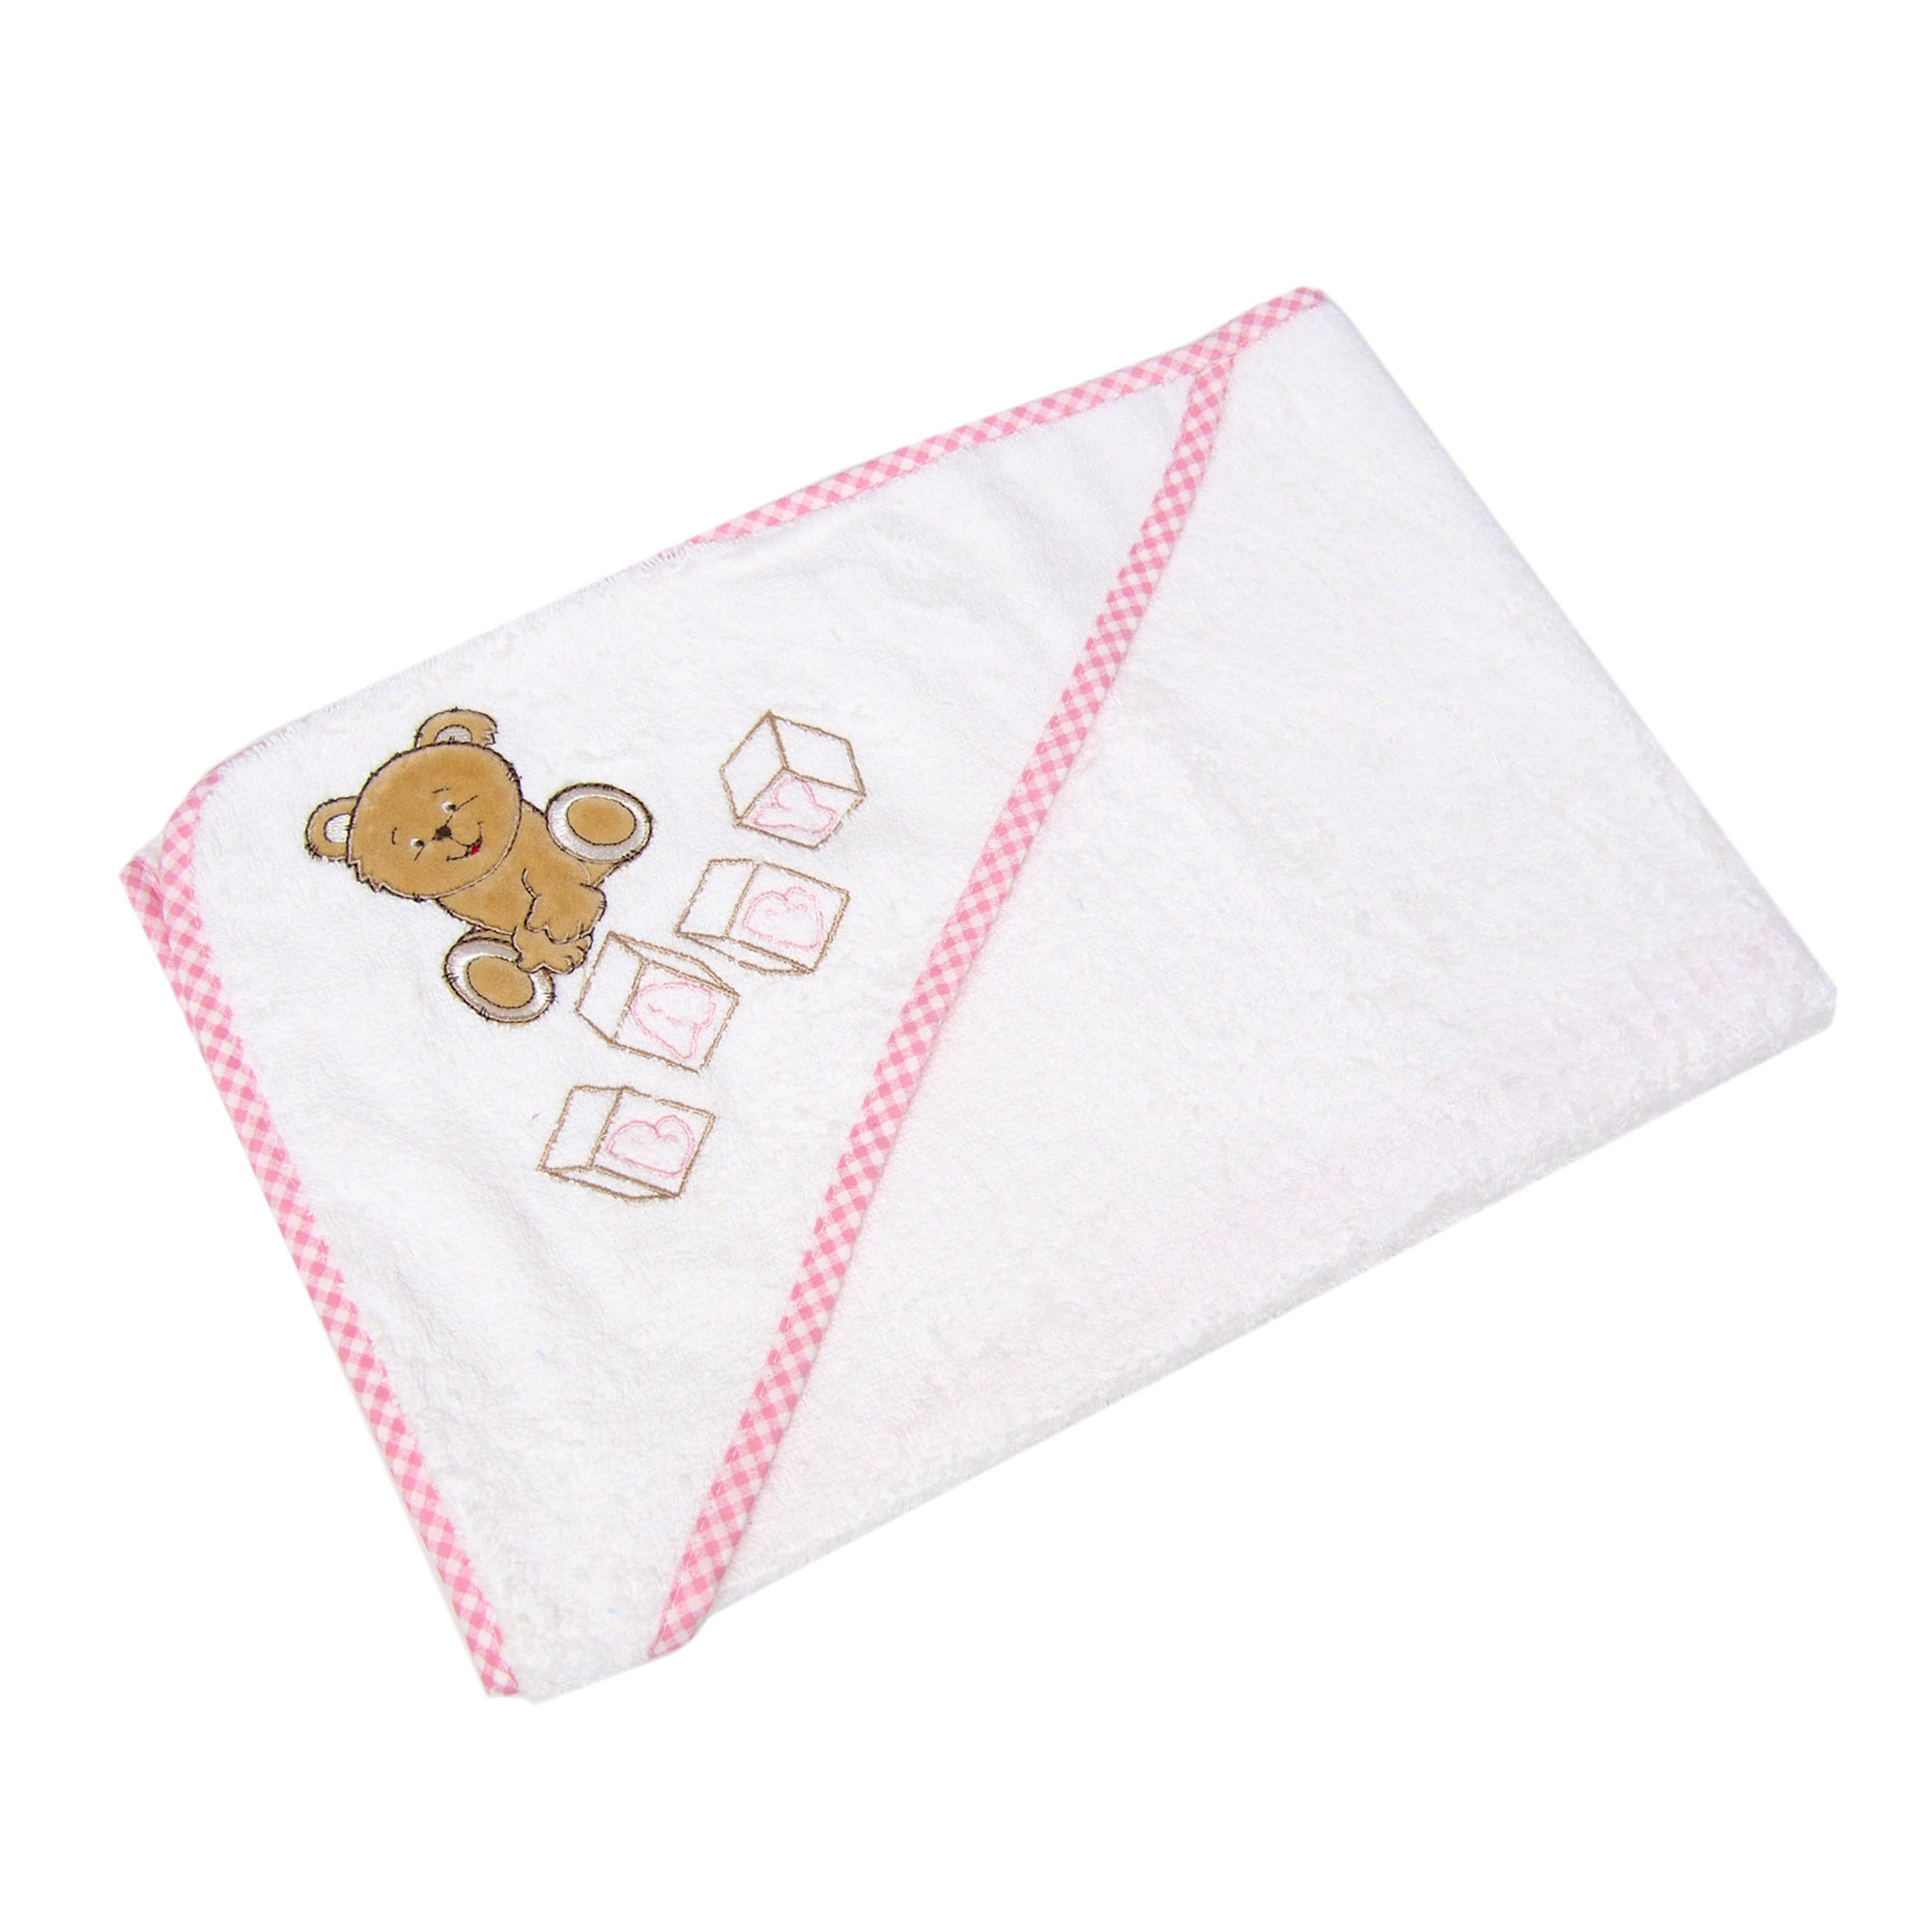 Детское полотенце Teddi Цвет: Белый, Розовый (80х80 см), размер 80х80 см thc566629 Детское полотенце Teddi Цвет: Белый, Розовый (80х80 см) - фото 1